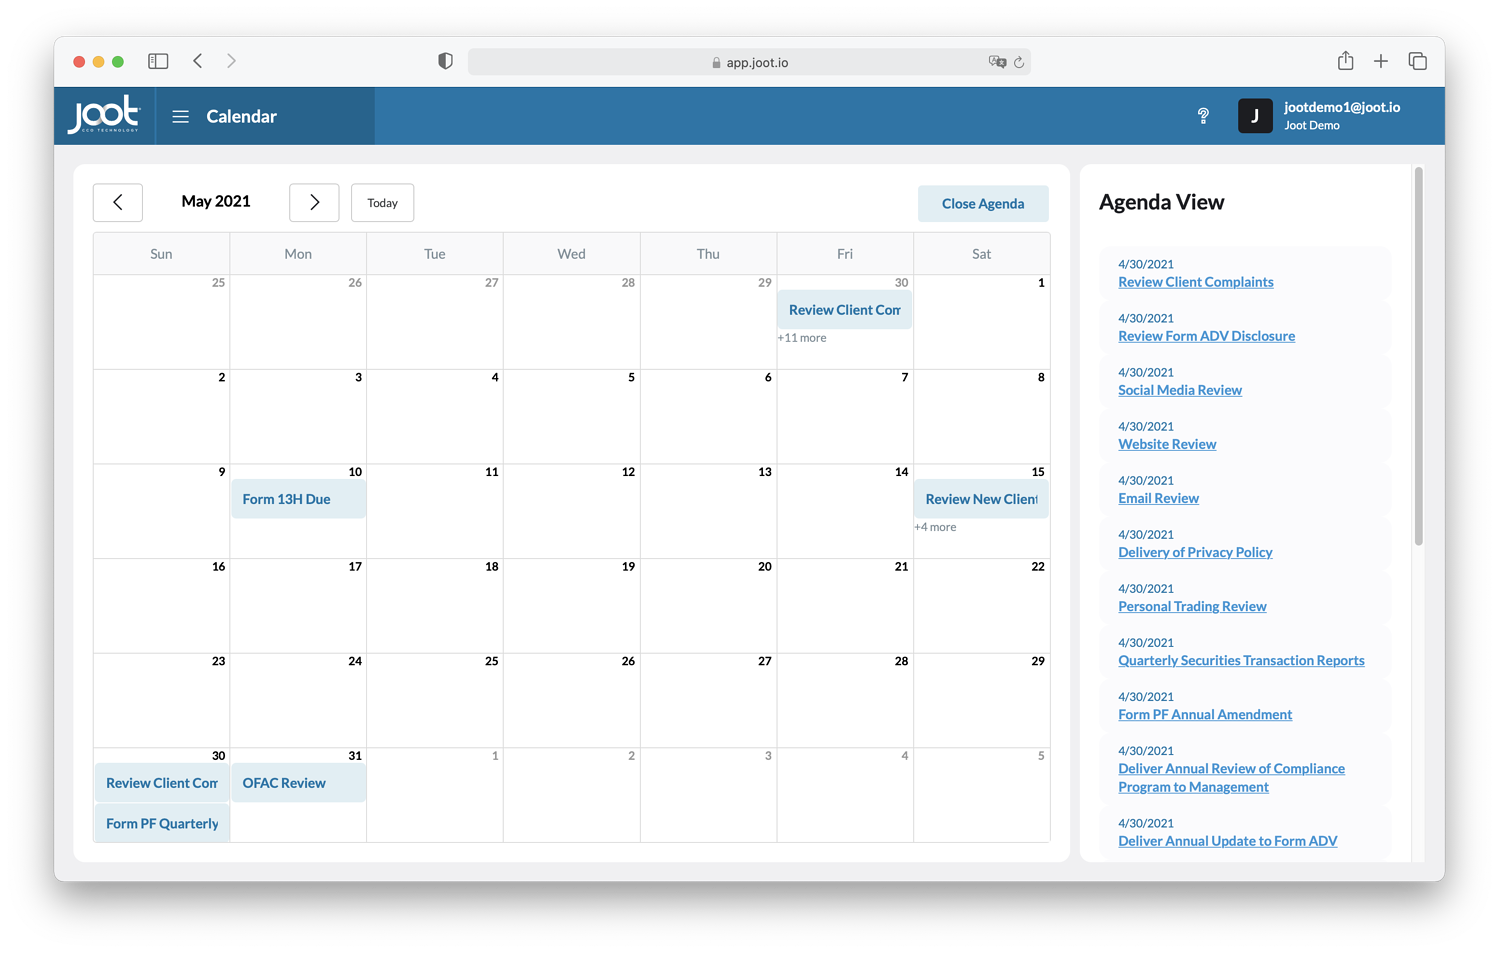 ScreenshotV2 - Calendar with Agenda